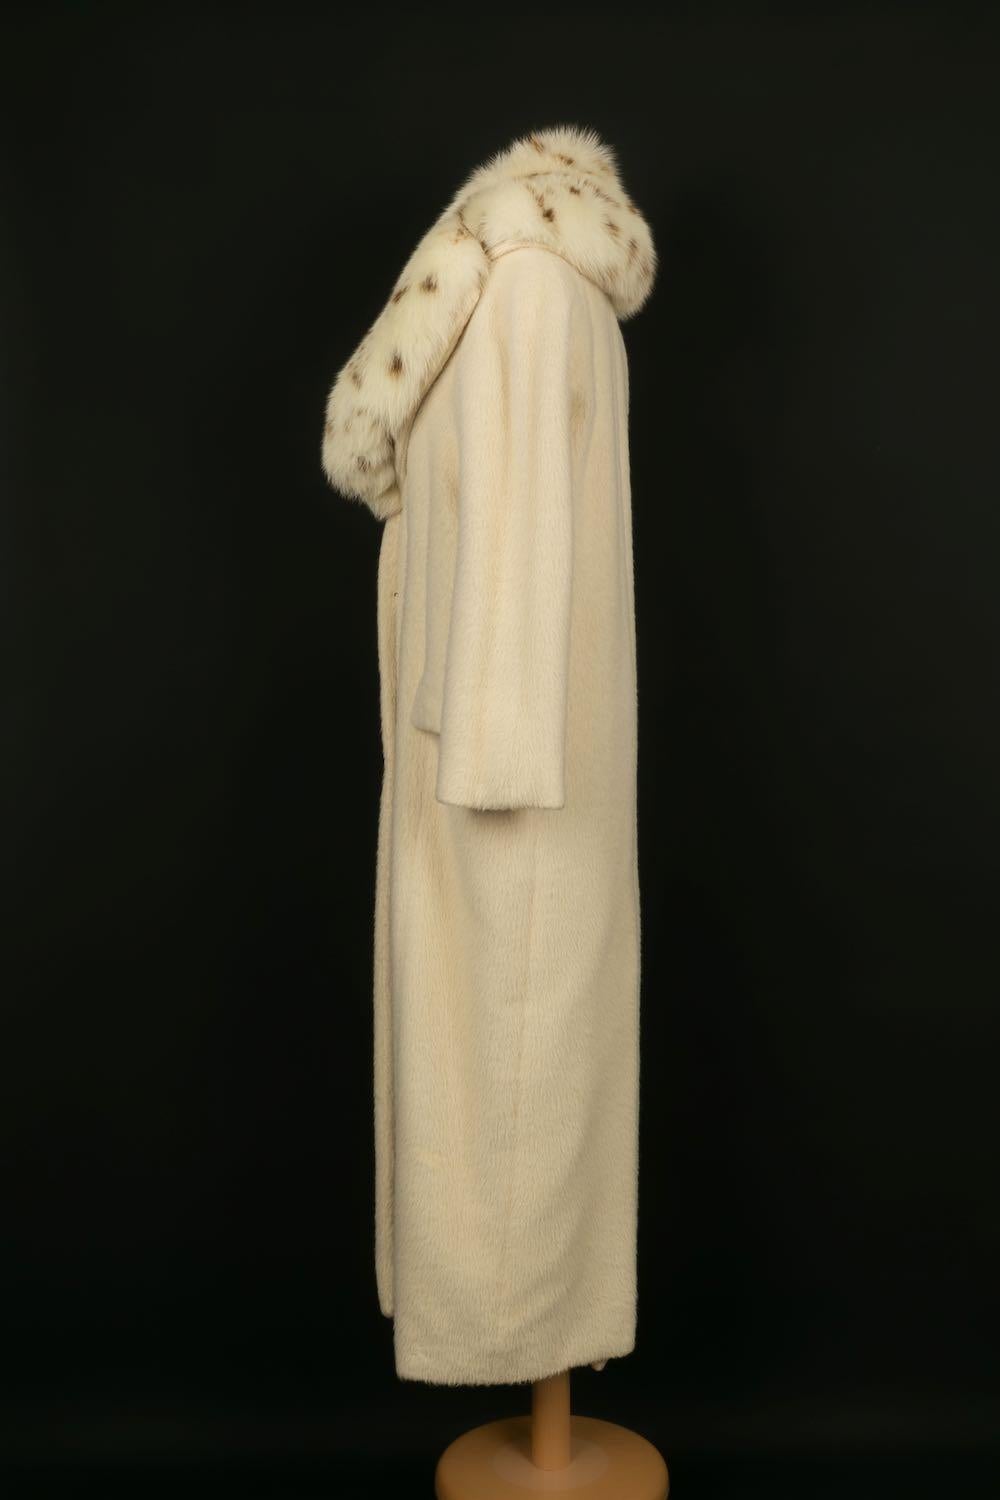 Christian Dior - Langer Mantel mit abnehmbarem Kragen aus Pelz. Keine Größenangabe, es passt eine 36FR.

Zusätzliche Informationen: 
Abmessungen: Schulterbreite: 40 cm, Brustumfang: 50 cm, Ärmellänge: 50 cm, Länge: 130 cm
Zustand: Sehr guter